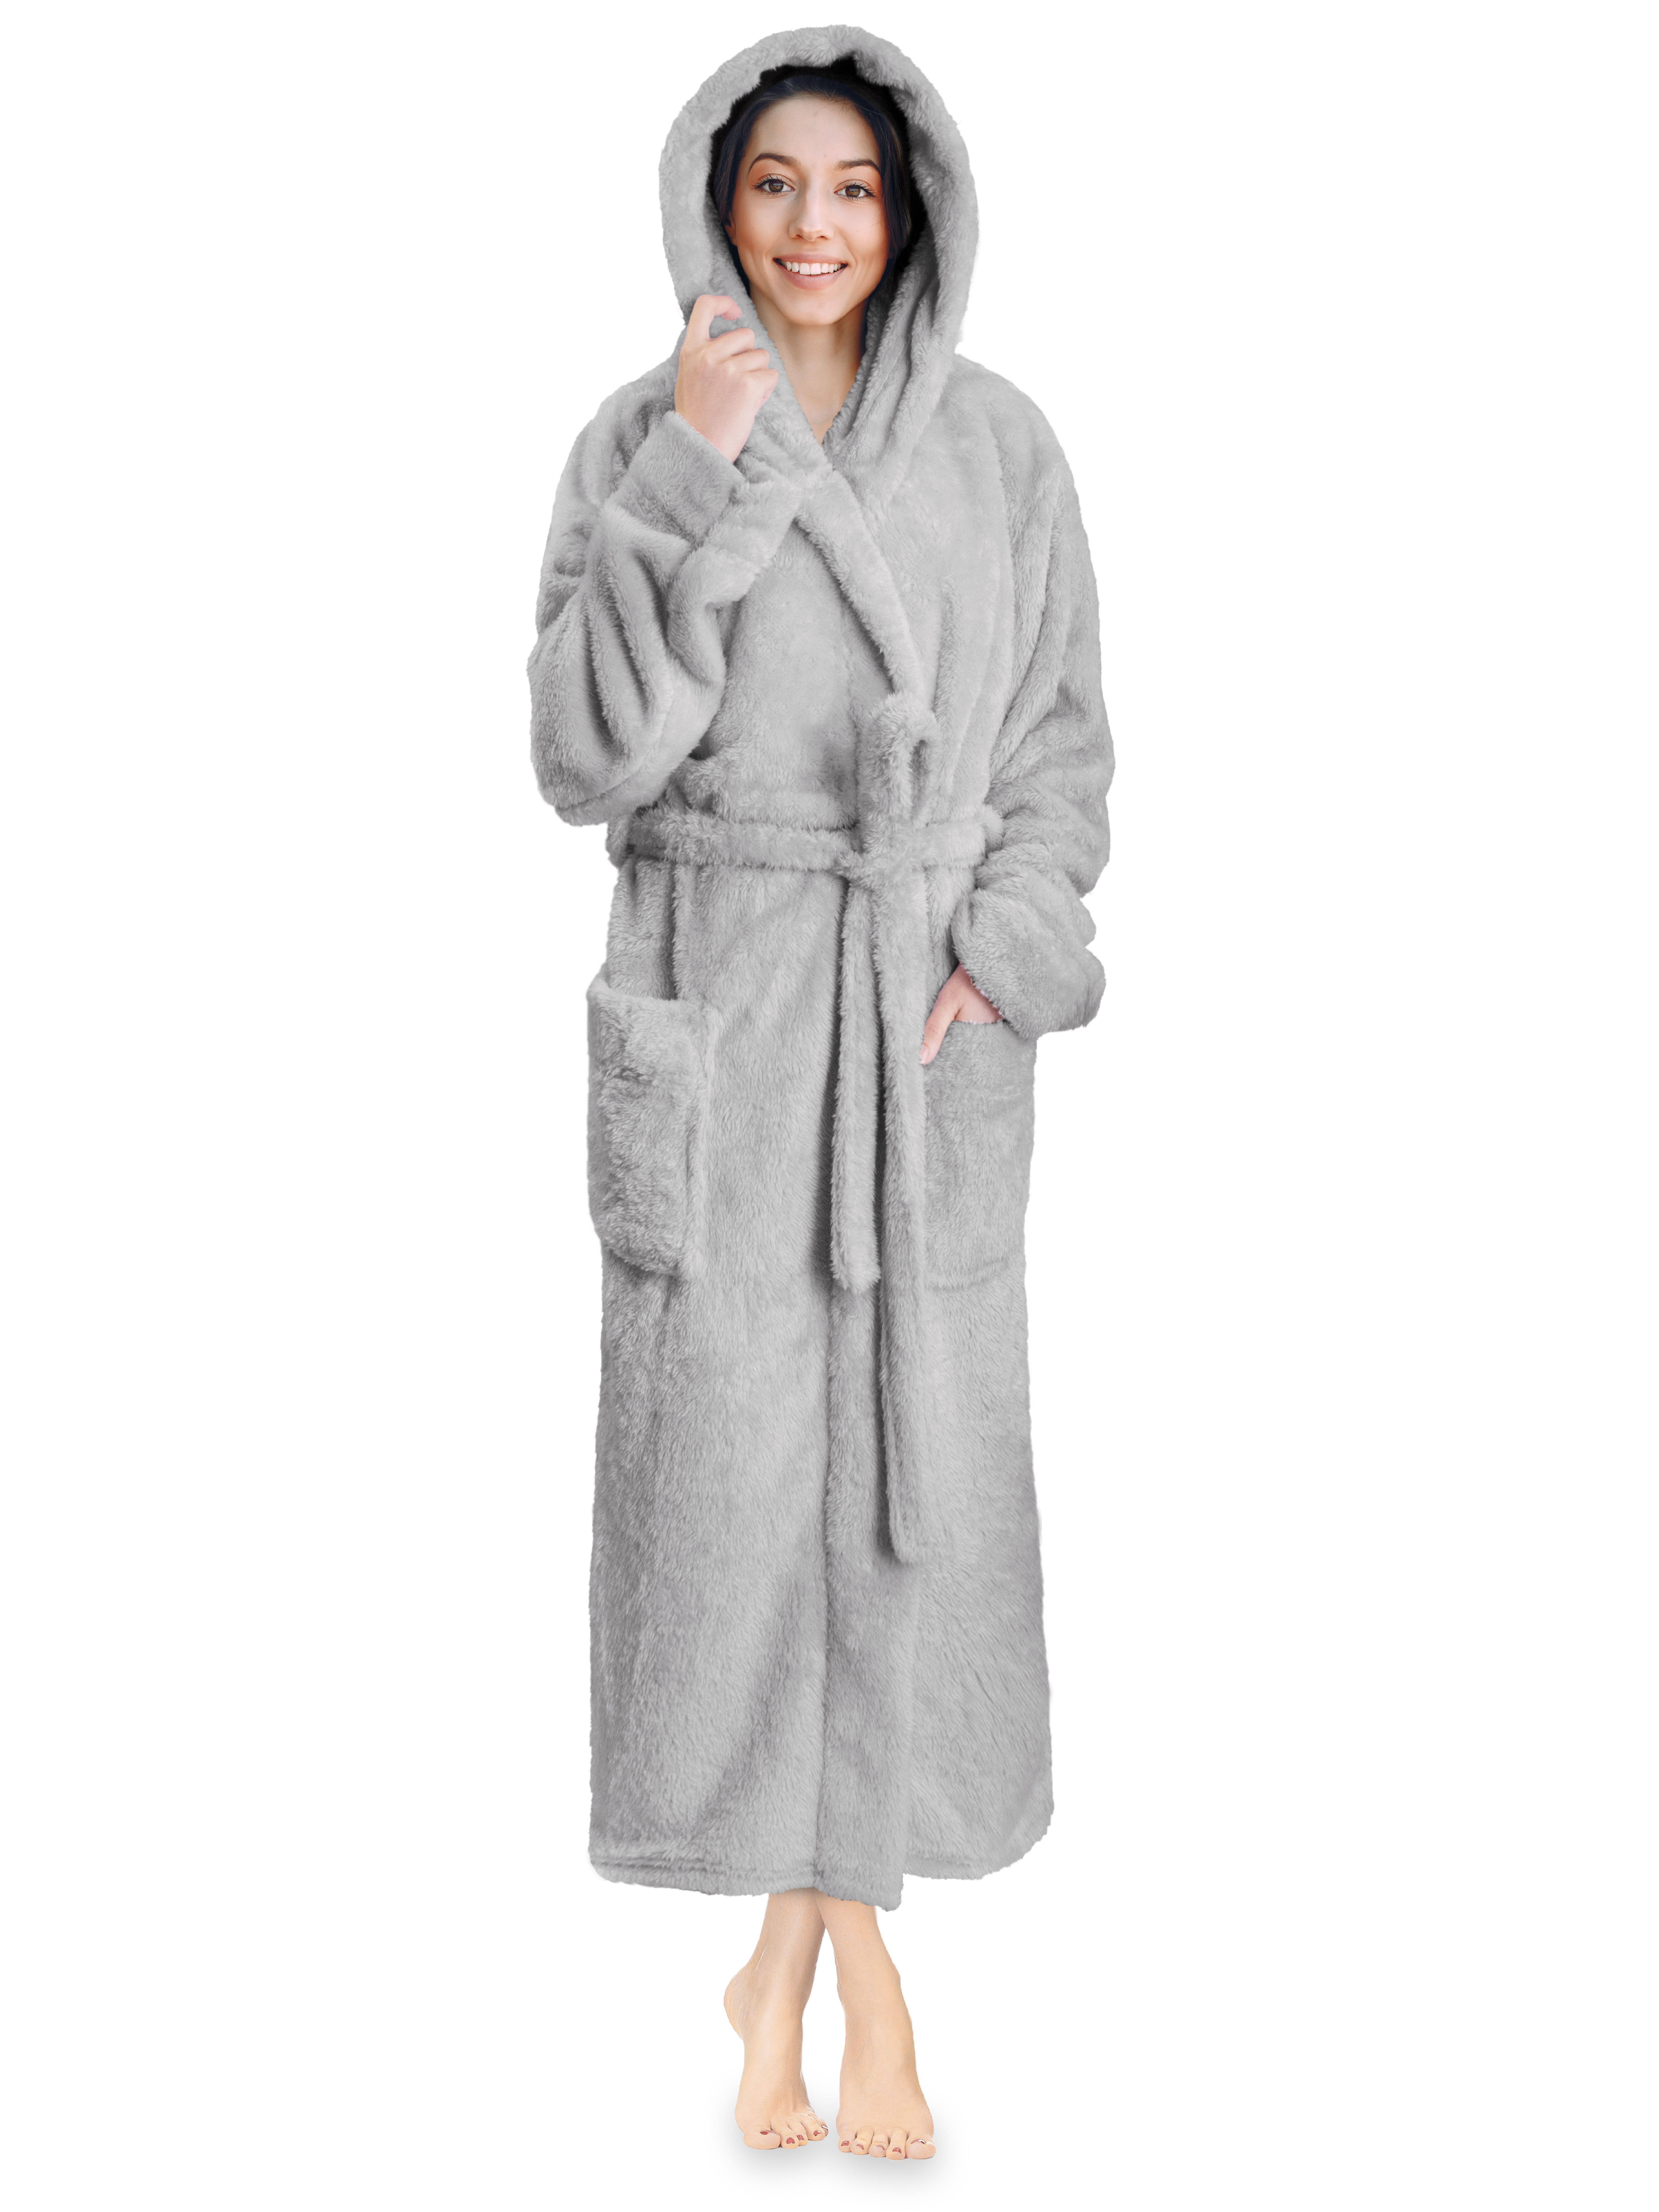 Buy Women's Grey Robes Online